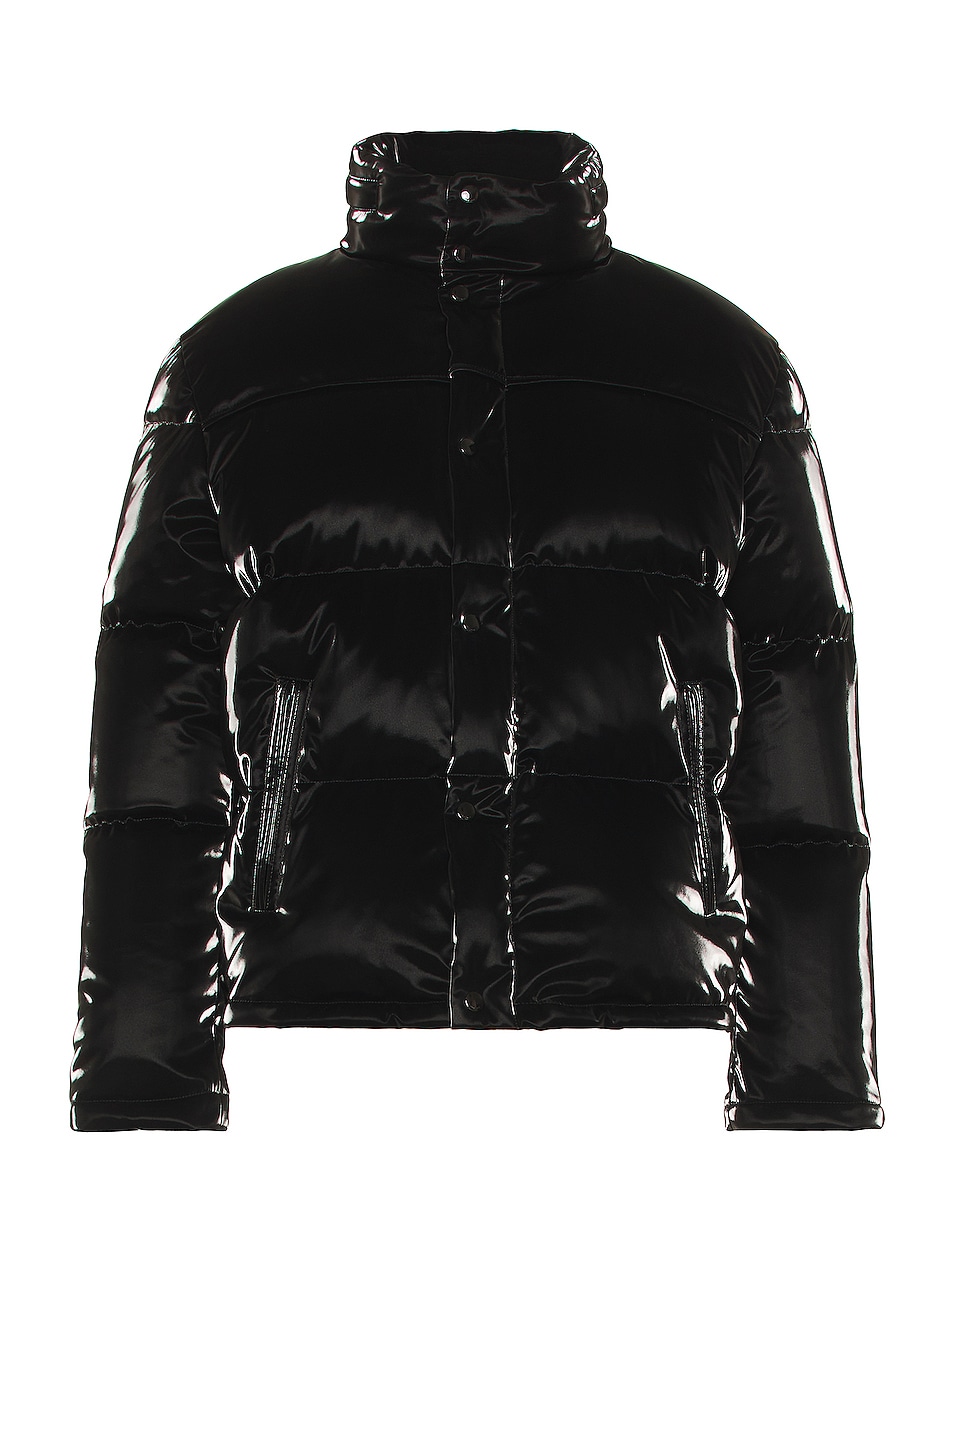 Saint Laurent Doudoune Oversize Jacket in Noir | FWRD